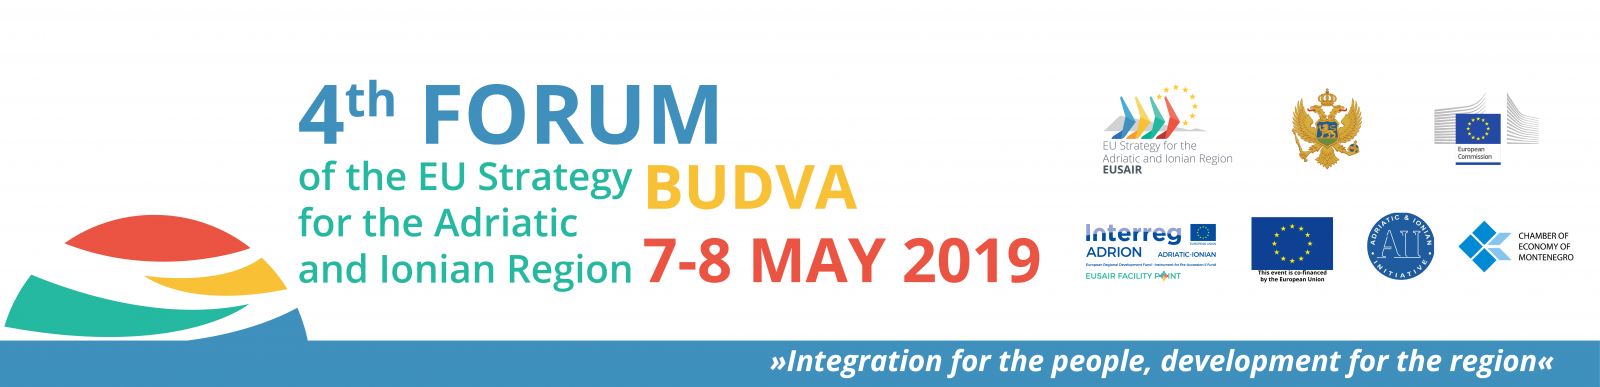 Četvrti forum Strategije Evropske unije za Jadransko-jonski region biće održan u Budvi od 6. do 8. maja